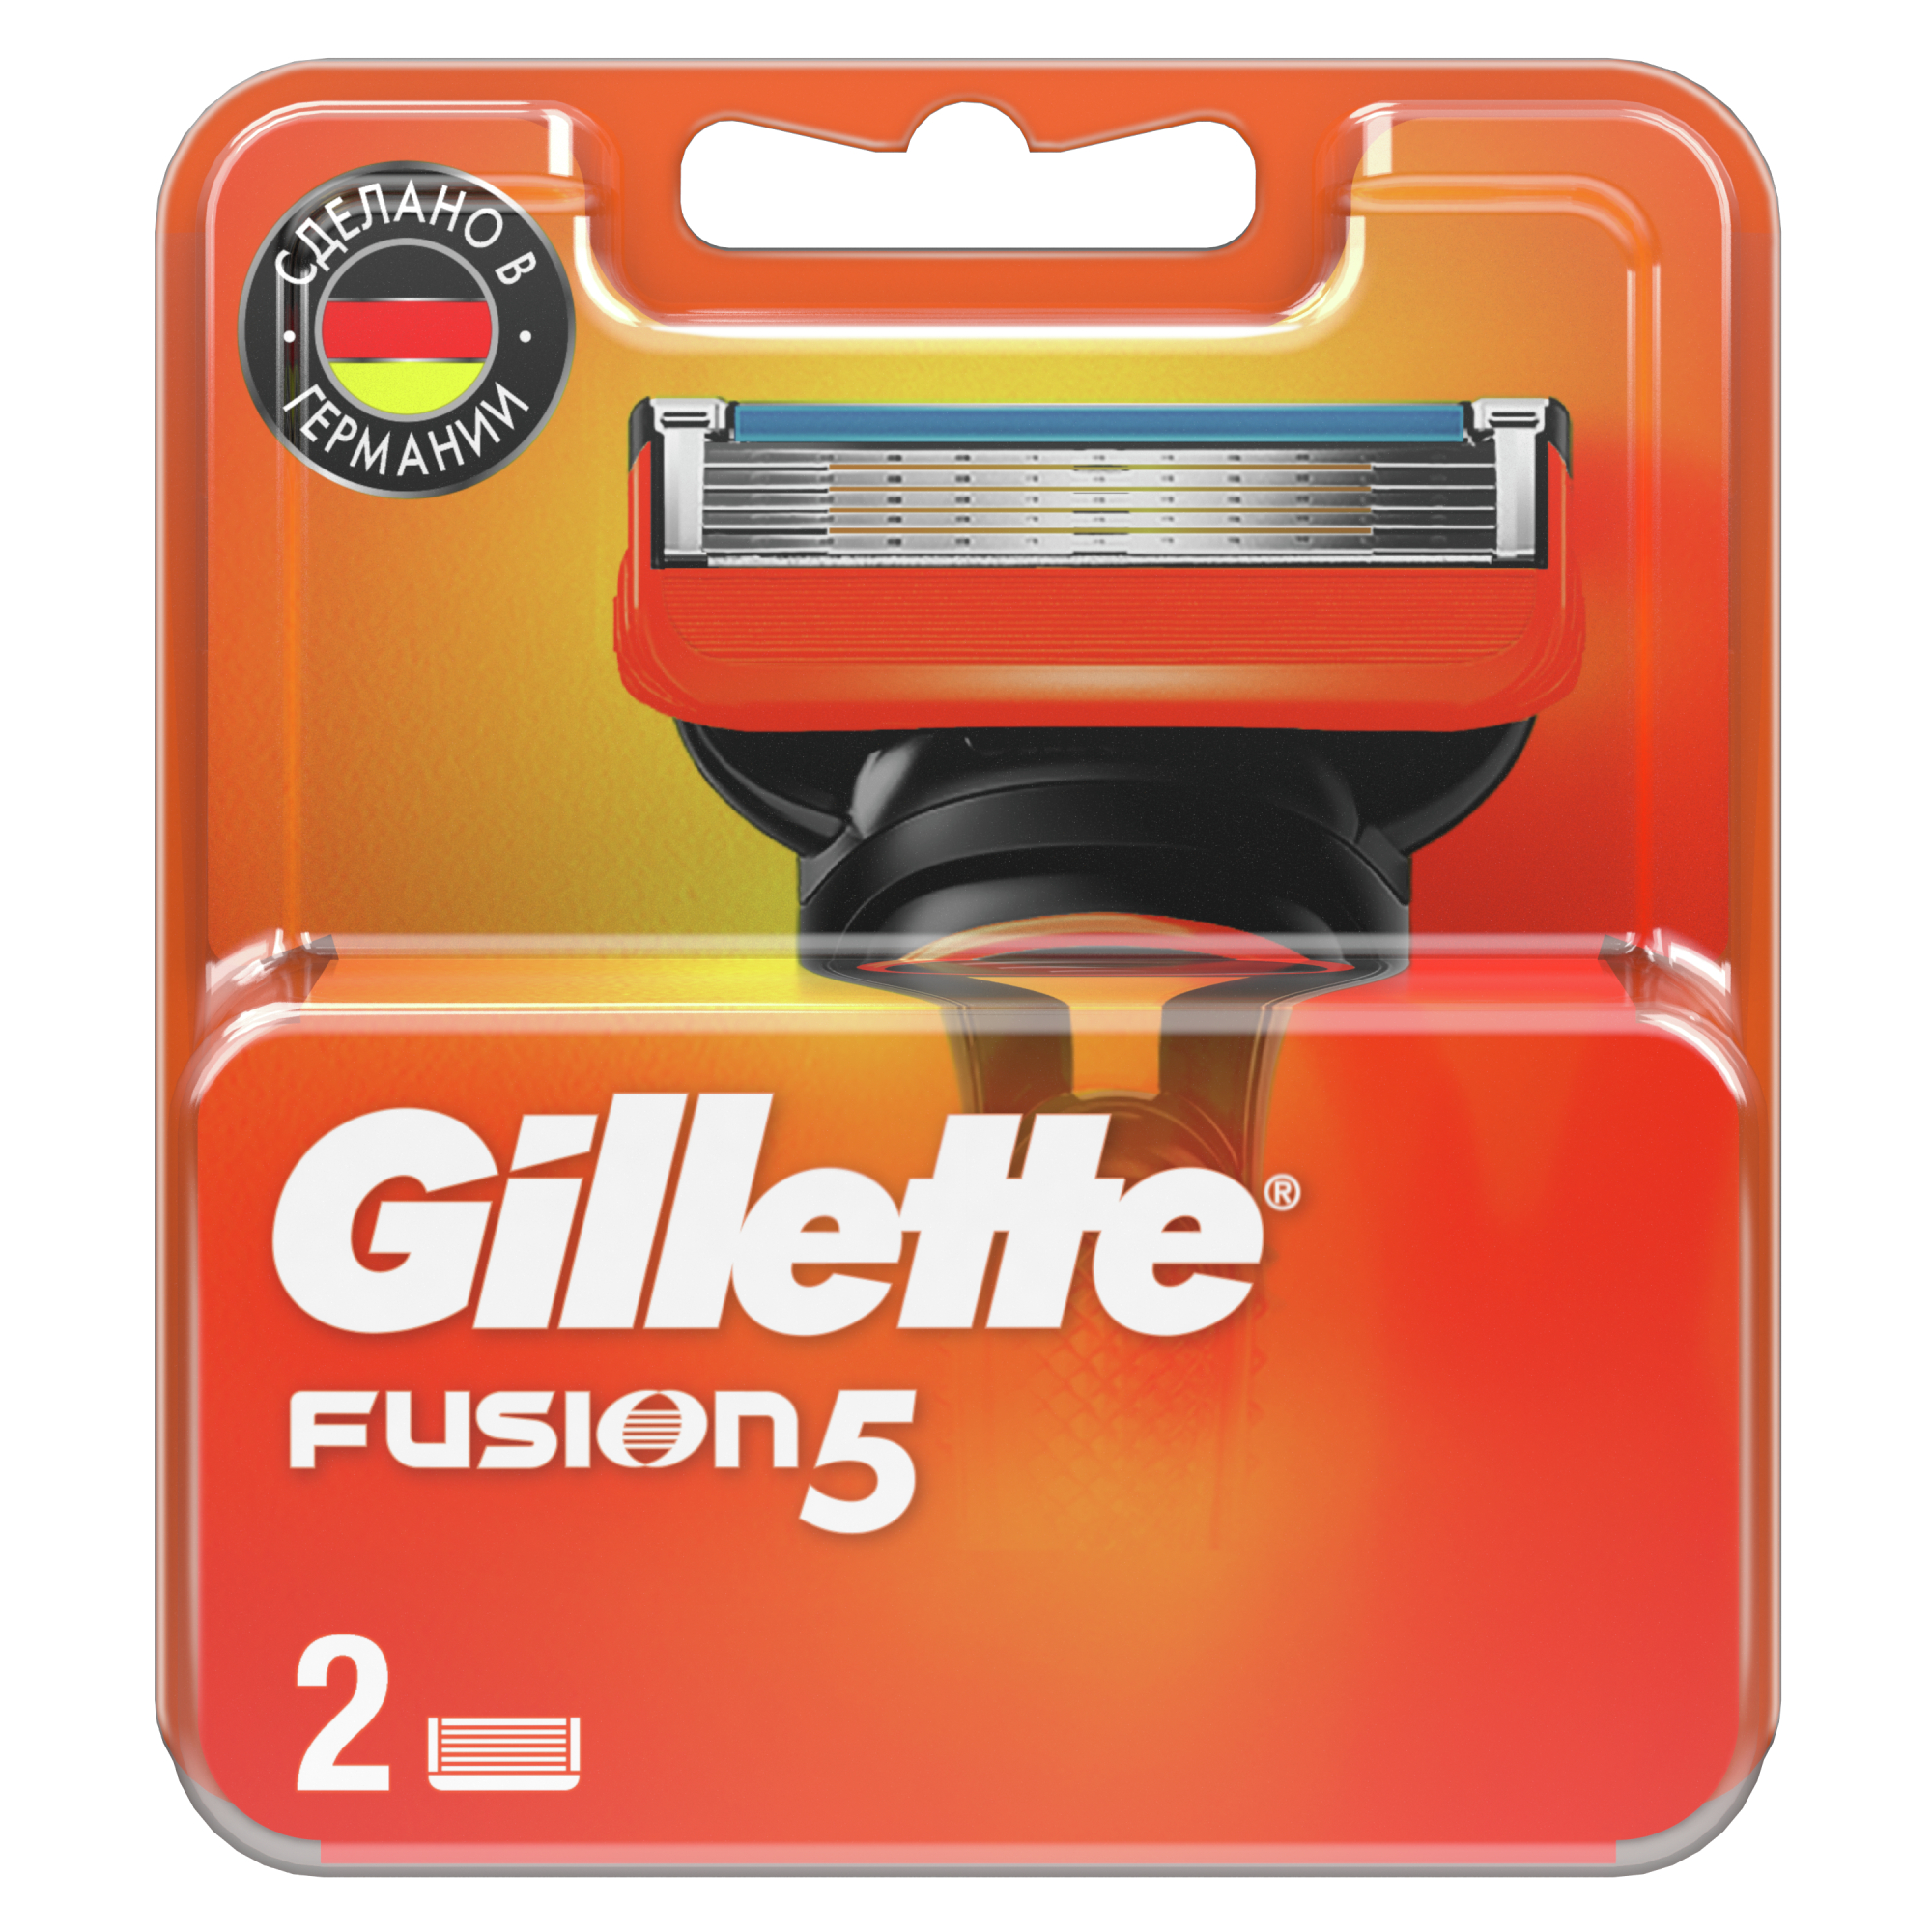 Сменные кассеты Gillette Fusion5 для мужской бритвы, 2 шт, с 5 лезвиями, c точным триммером для труднодоступных мест